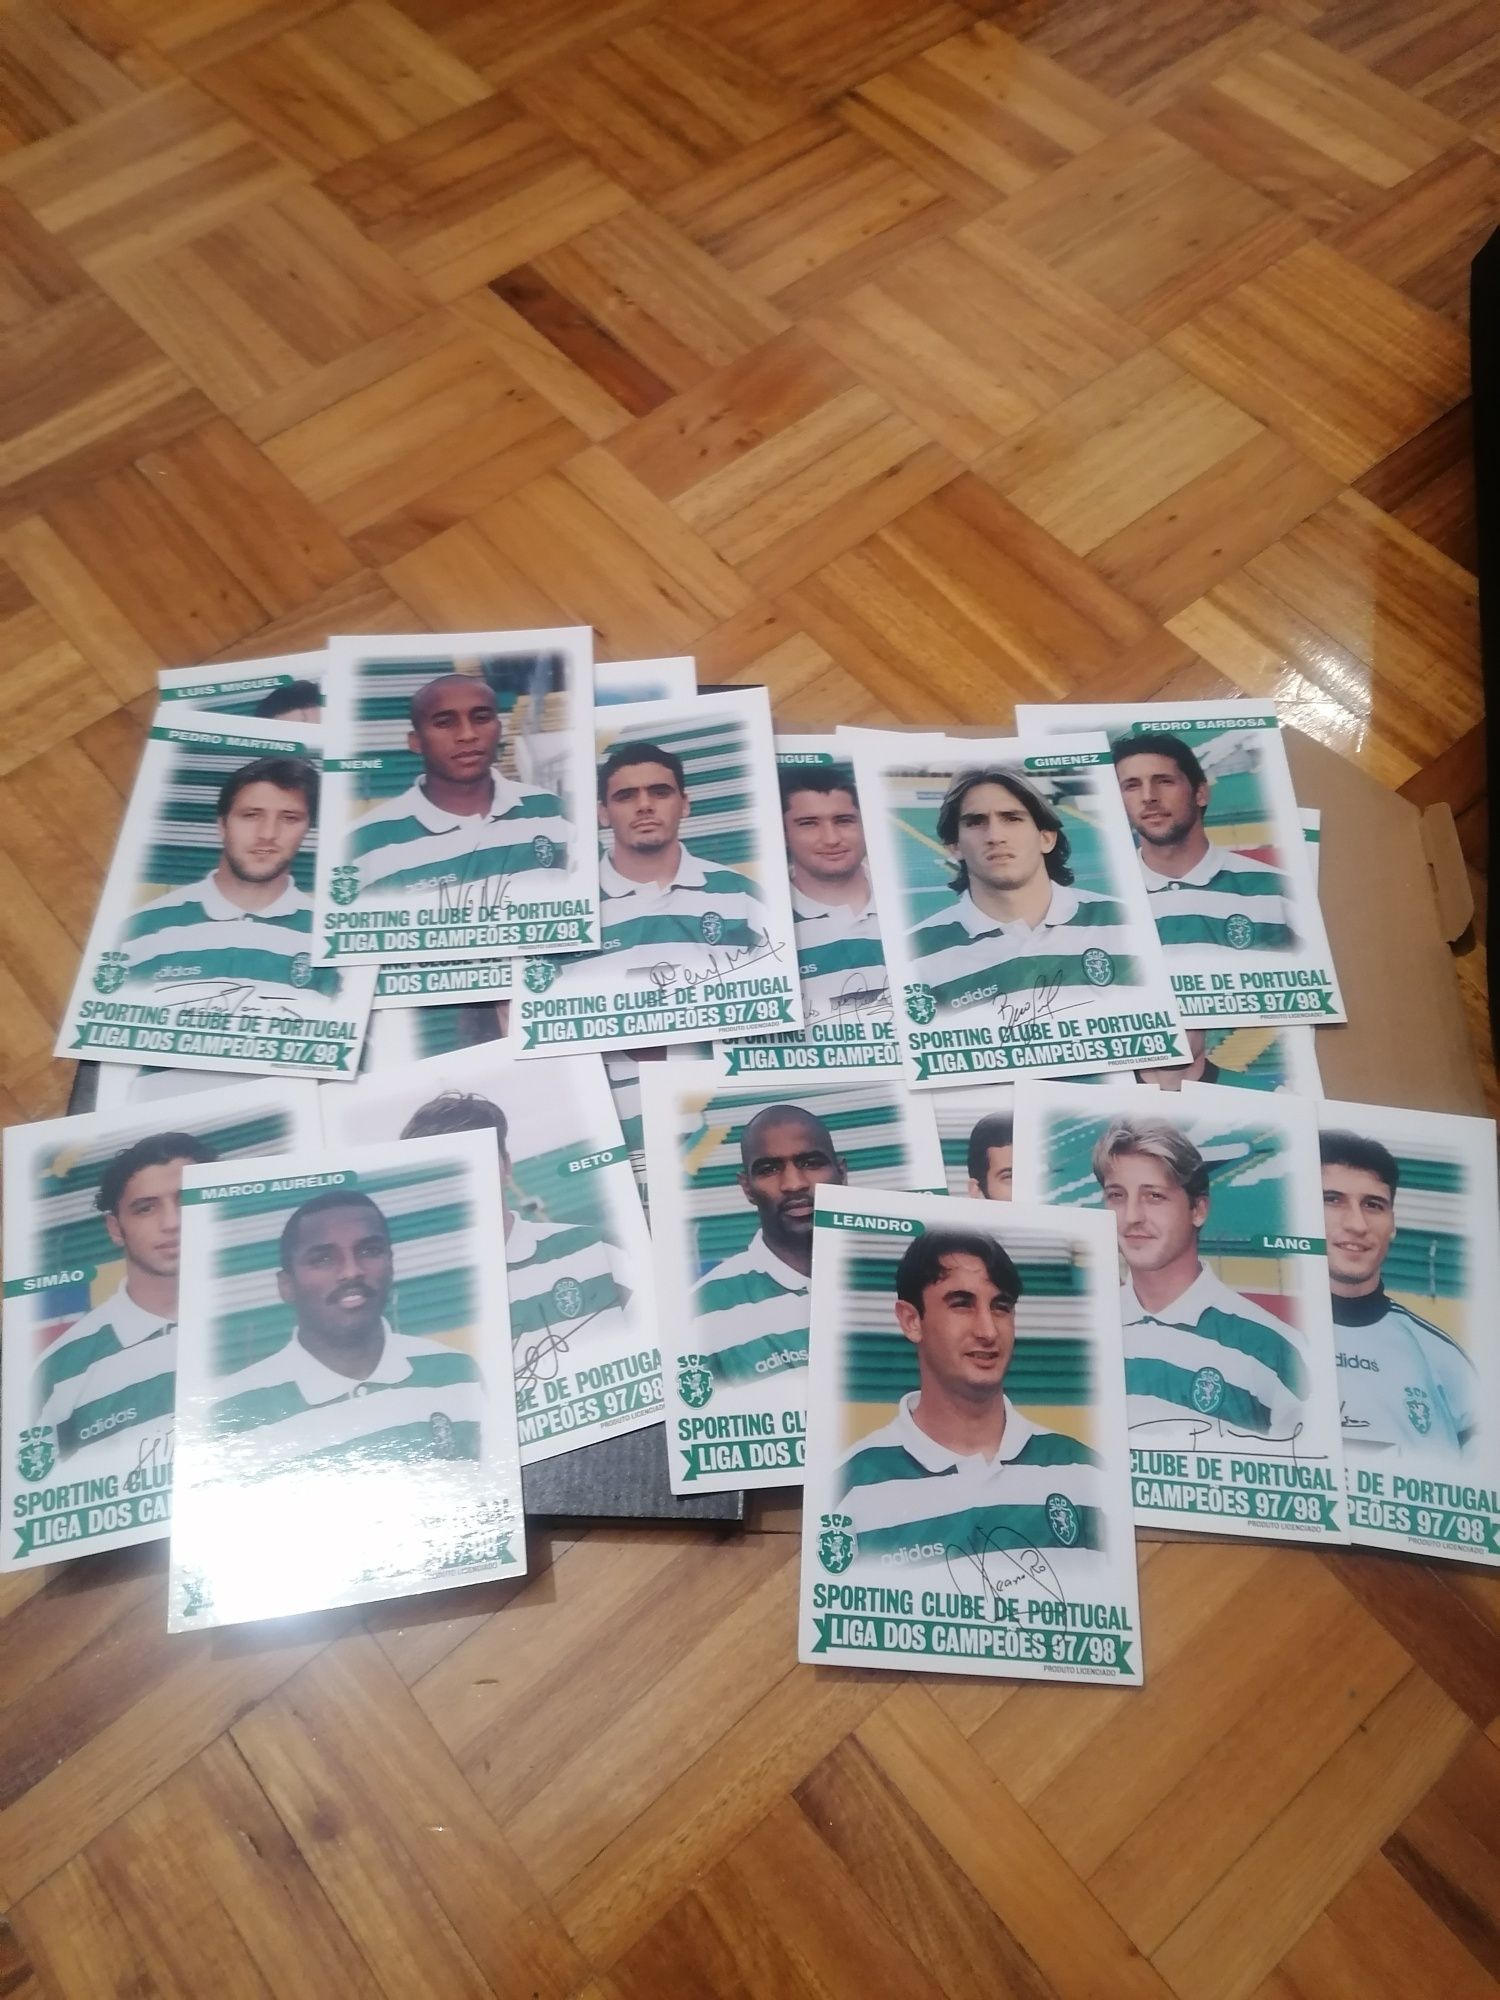 Cartas/Postais Sporting Liga dos Campeões 97/98 autografadas